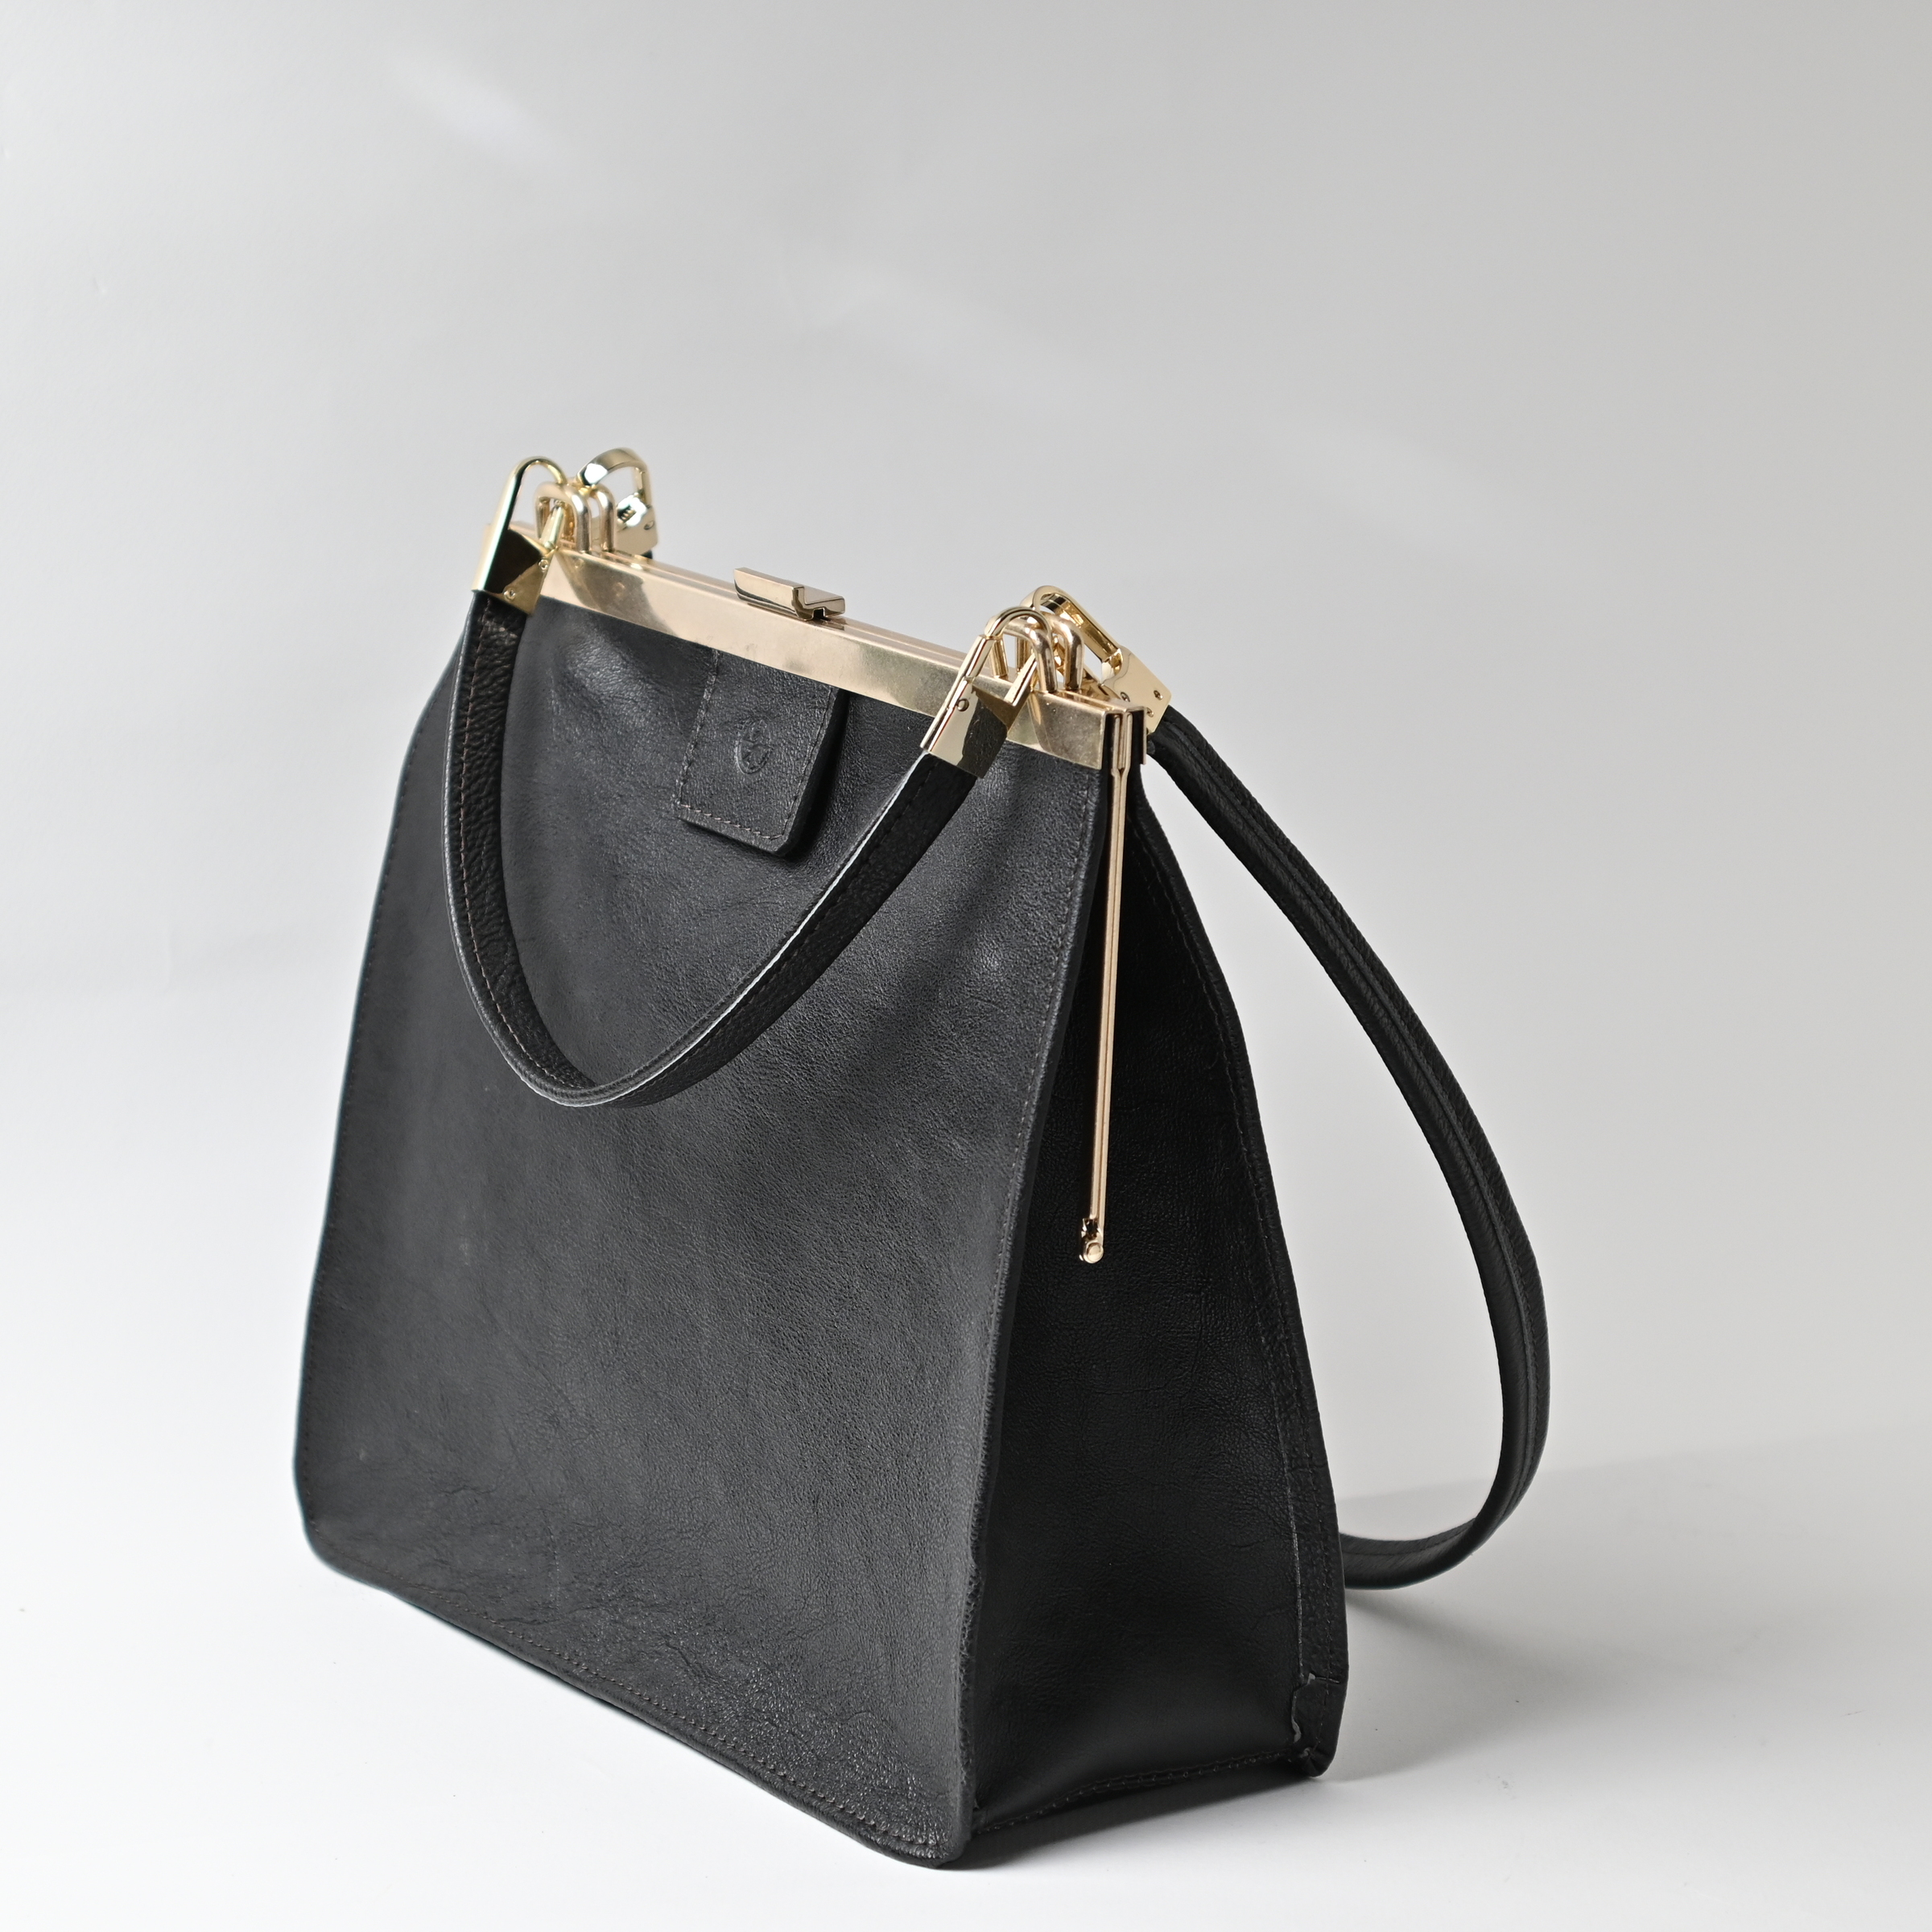 口金大方包- 墨色CLASP BUSINESS BAG - Ink – 山本口金店Yamamoto Leather